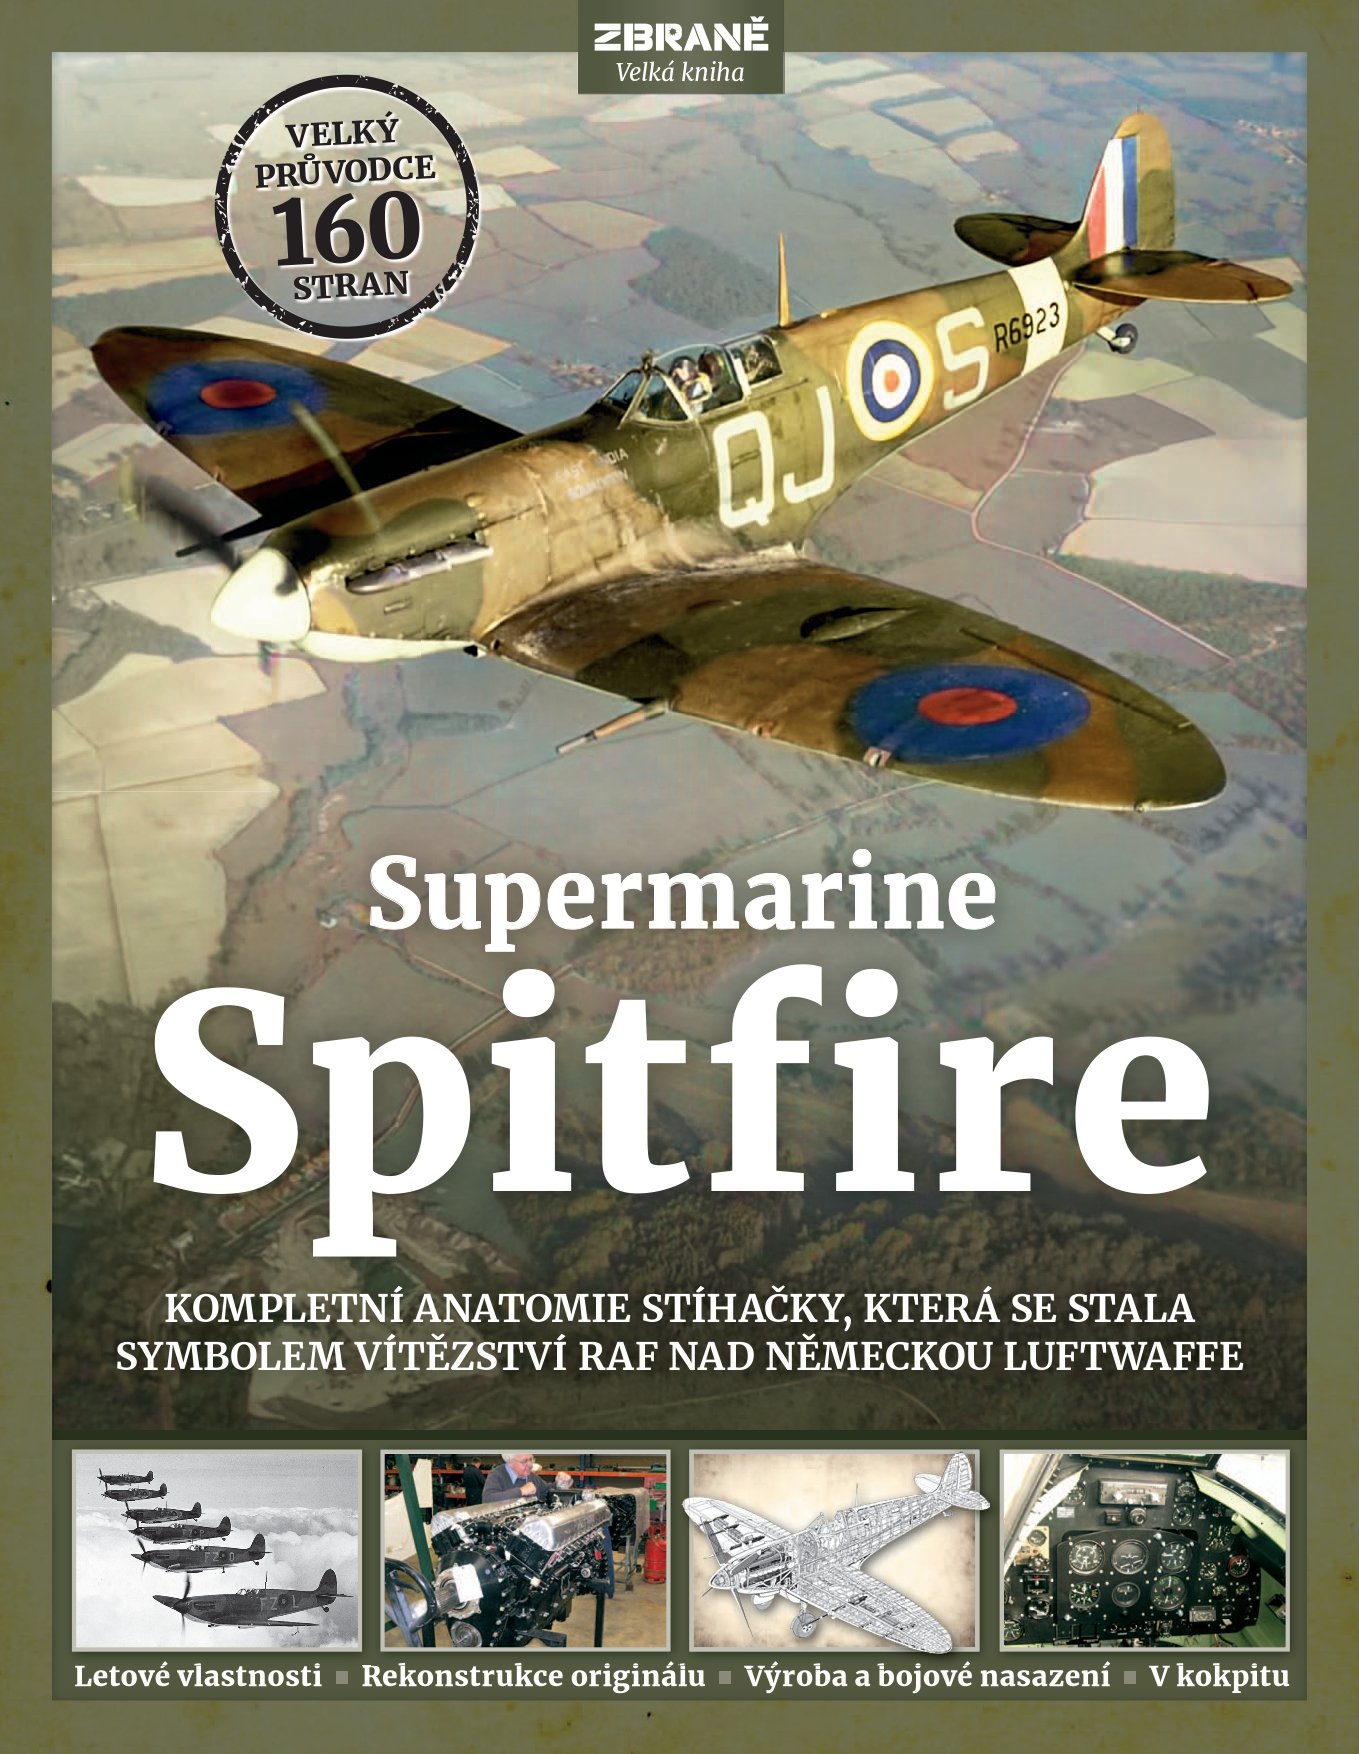 Supermarine Spitfire - Kompletní anatomie stíhačky, která se stala symbolem vítězství RAF nad Luftwaffe - Alfred Price